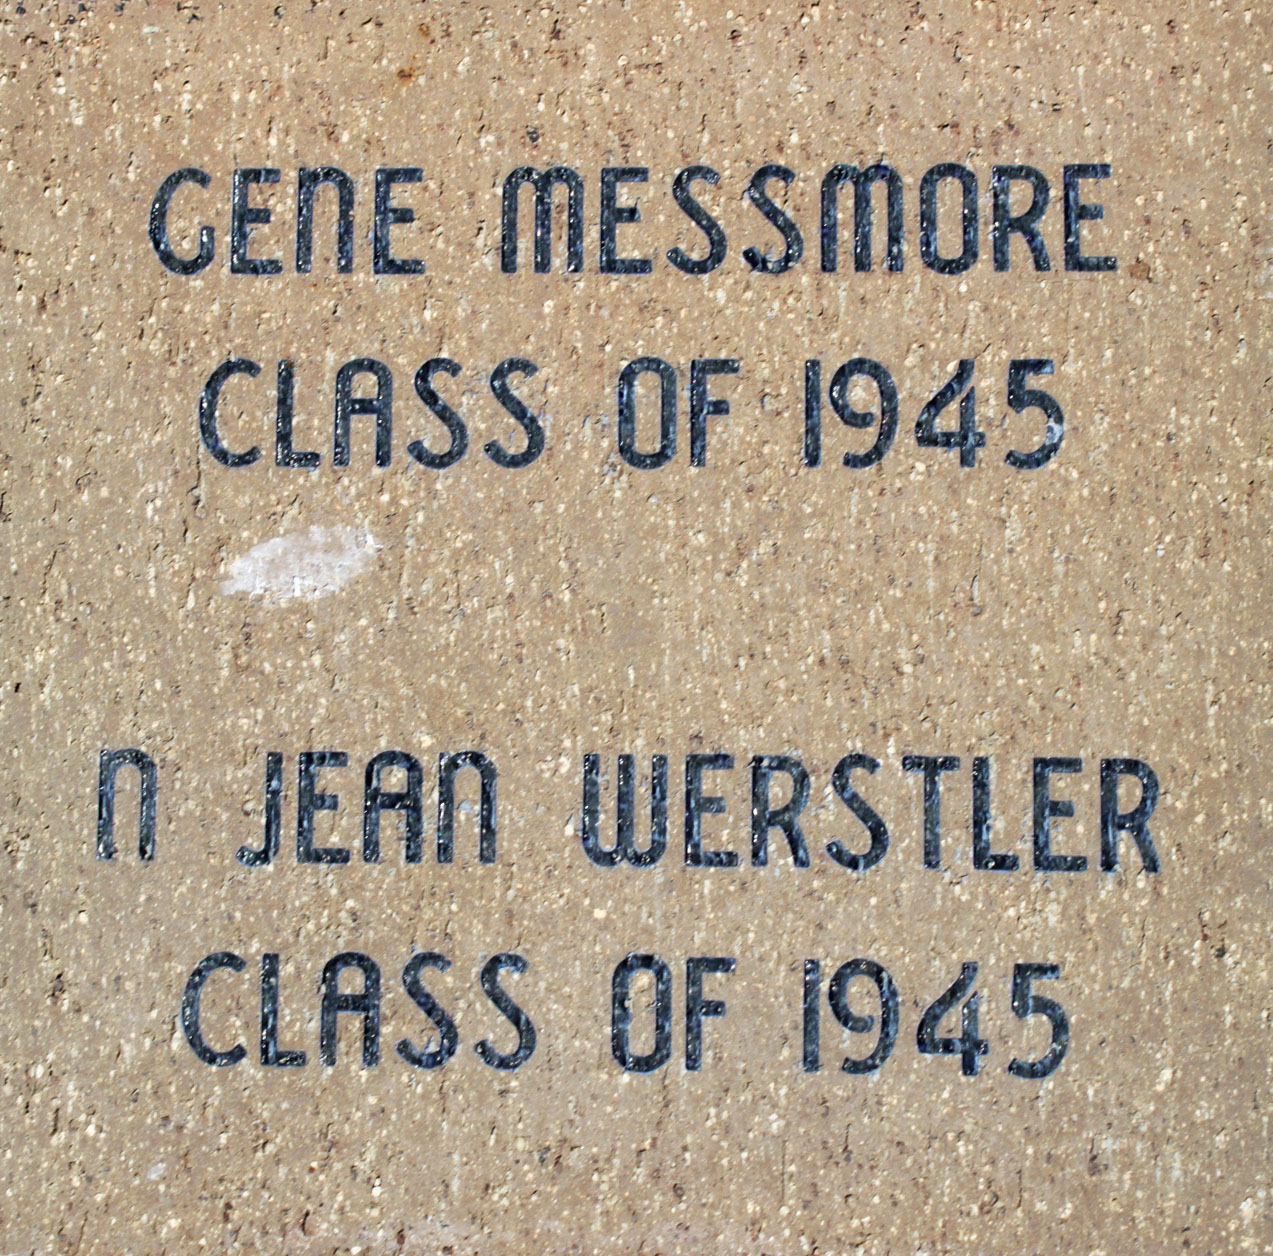 Messmore Werstler